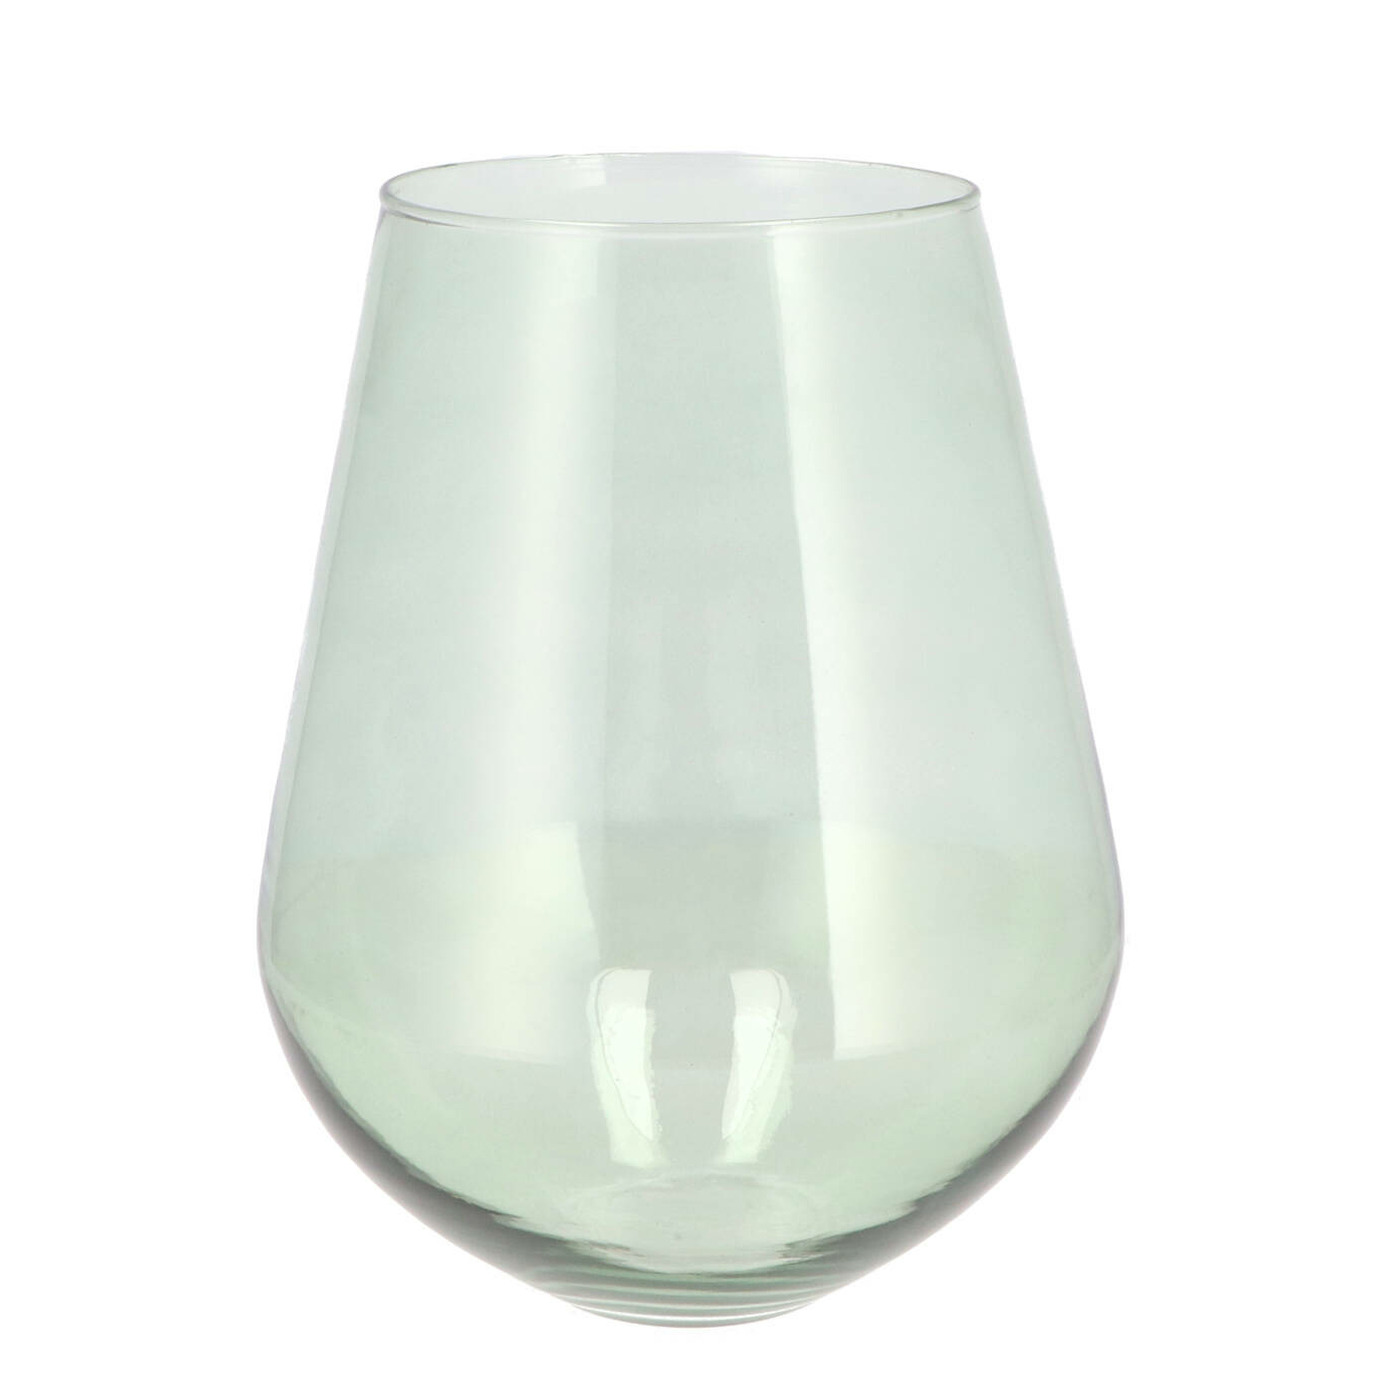 DK Design Bloemenvaas Mira - vaas druppel vorm model - groen glas - D22 x H28 cm -